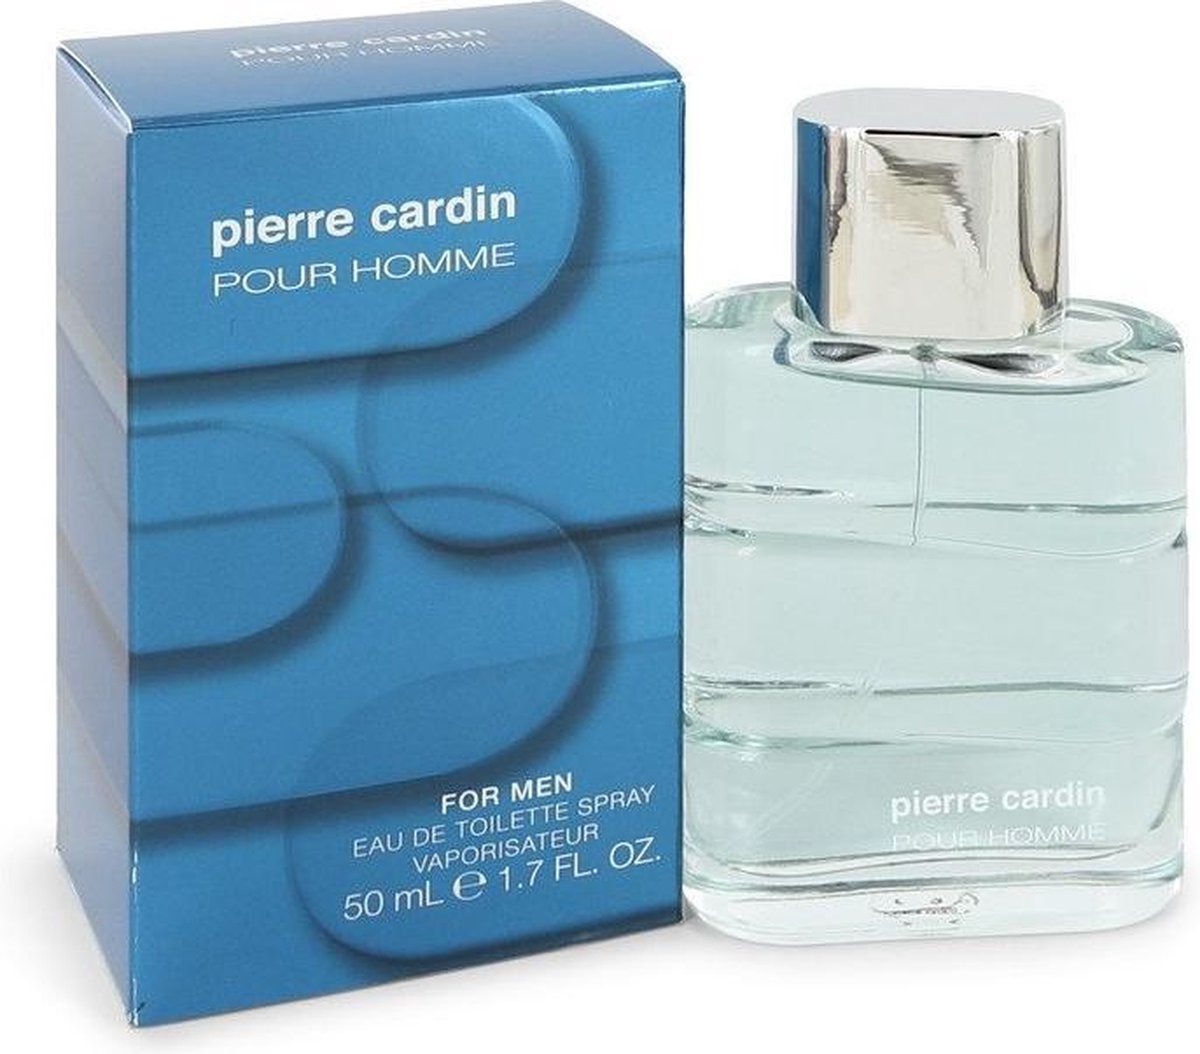 Pierre Cardin Pour Homme / For Men - Eau de toilette spray - 50 ml